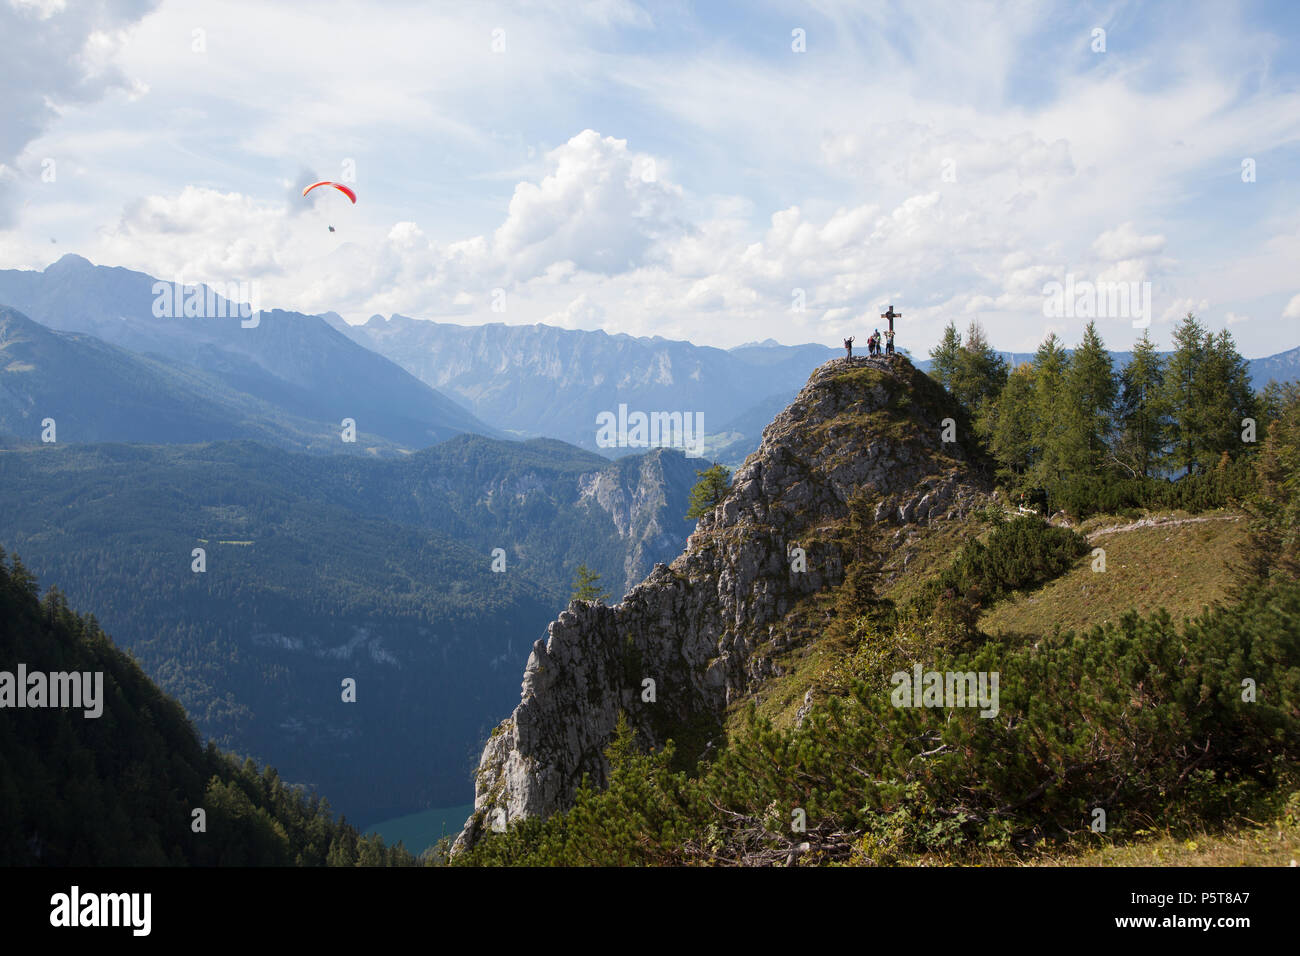 Klettersteig am Jenner im Berchtesgadener Land mit Gipfelkreuz Stock Photo